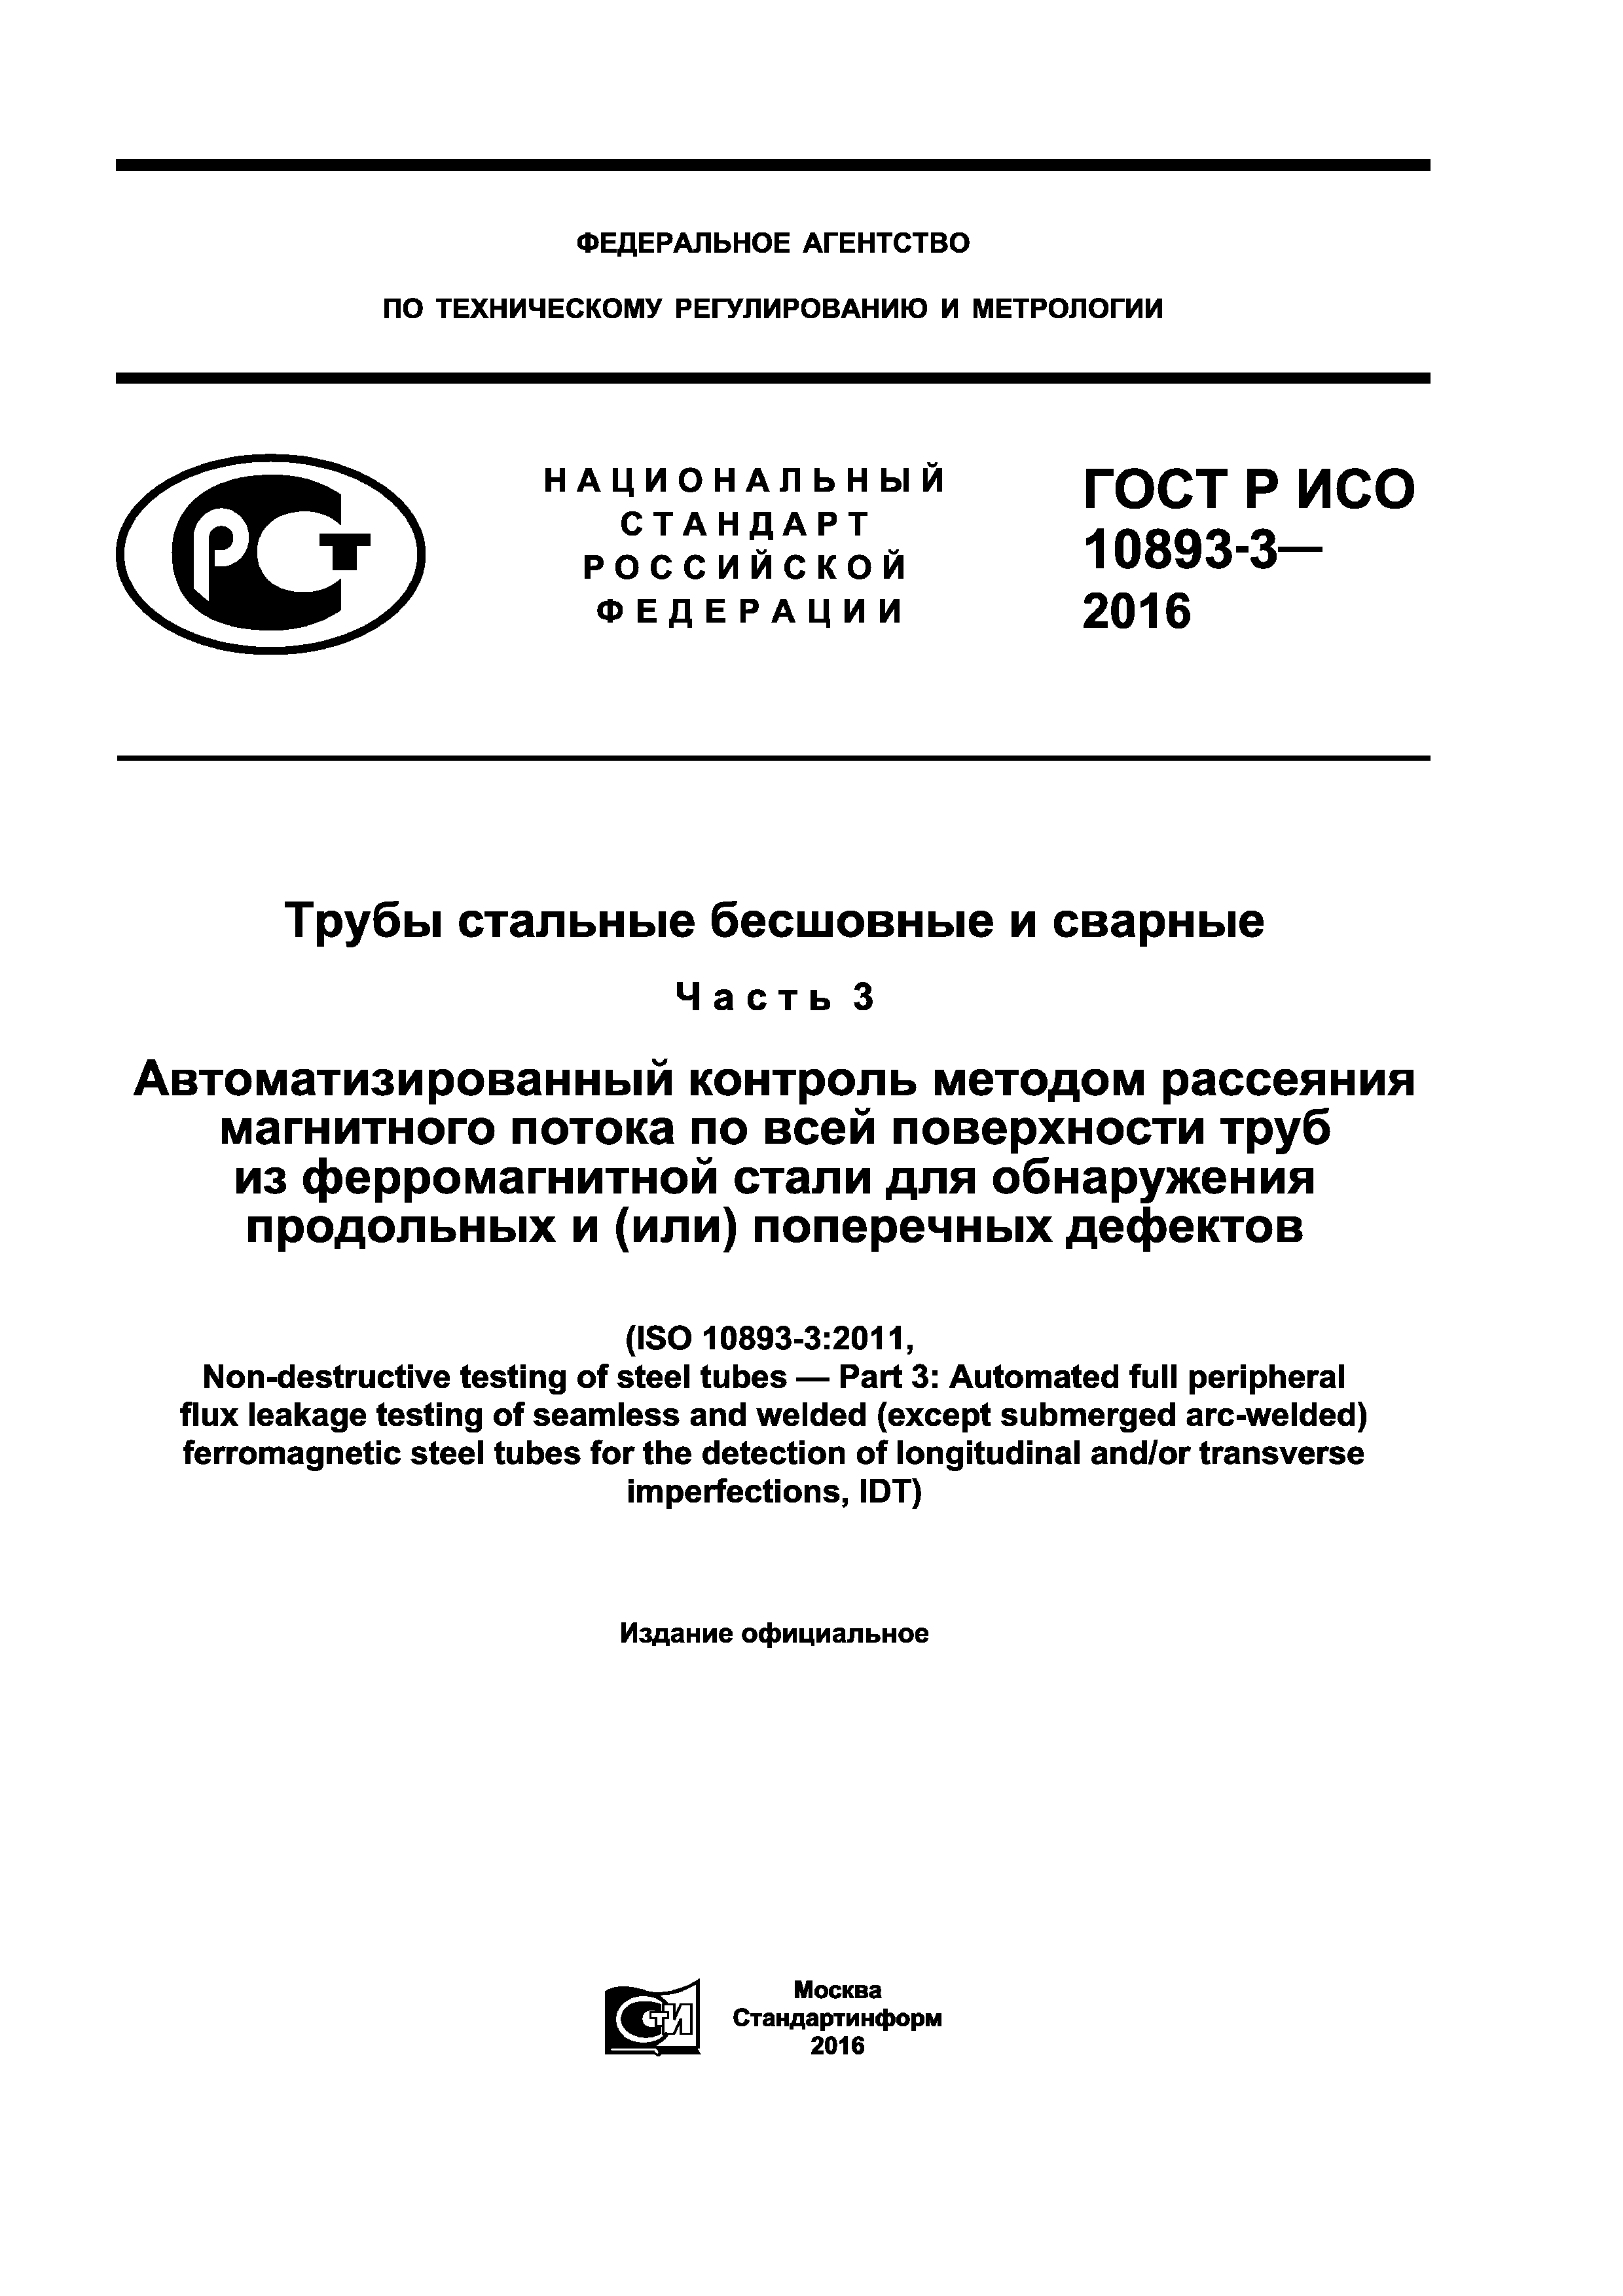 ГОСТ Р ИСО 10893-3-2016